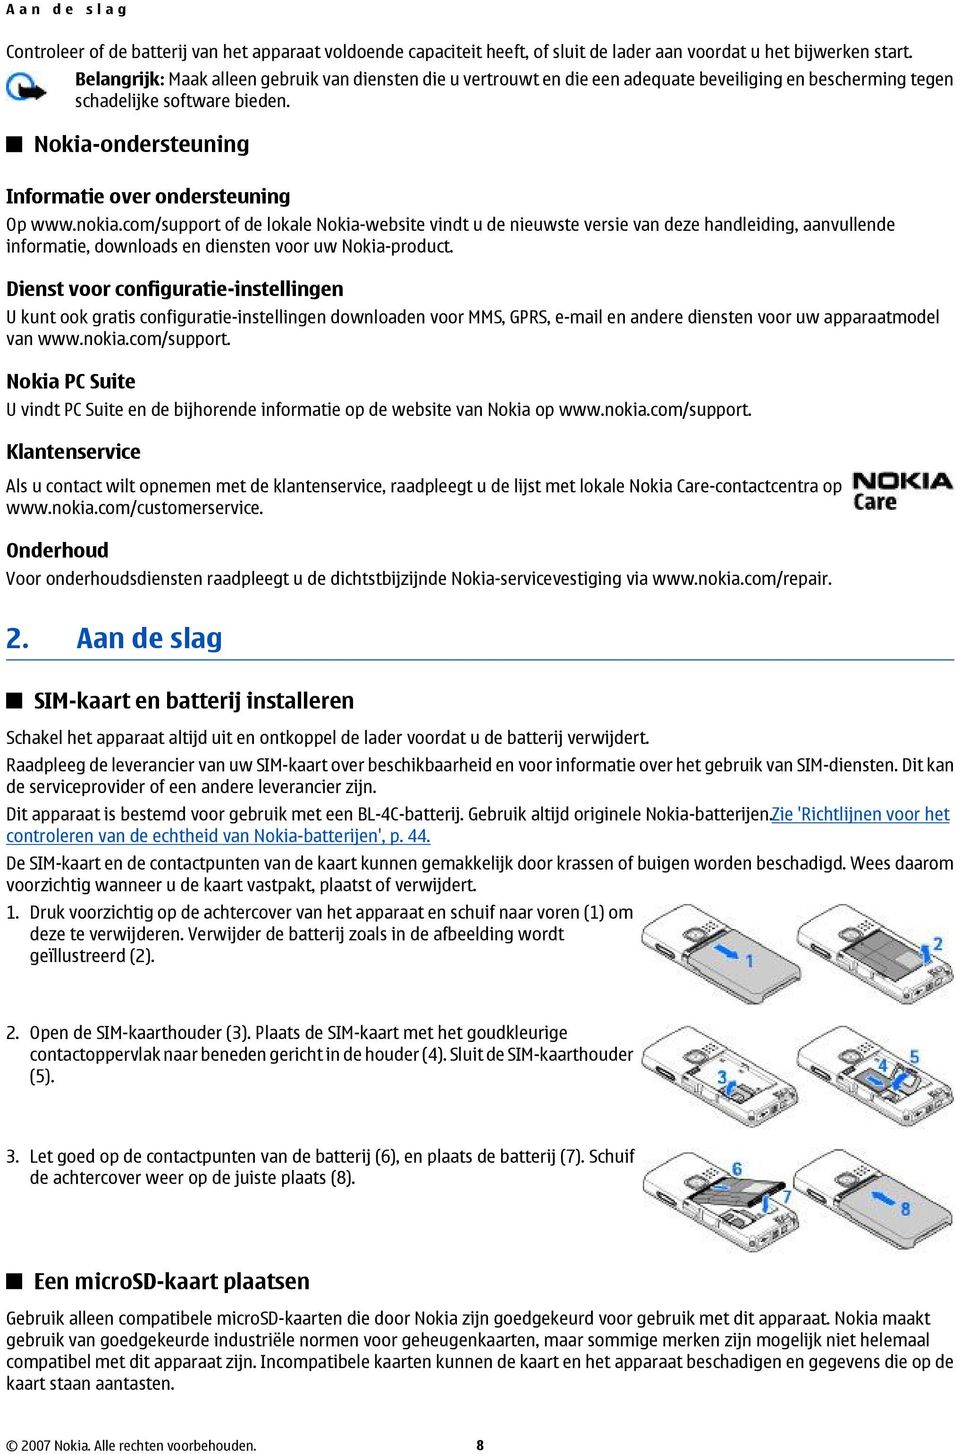 nokia.com/support of de lokale Nokia-website vindt u de nieuwste versie van deze handleiding, aanvullende informatie, downloads en diensten voor uw Nokia-product.